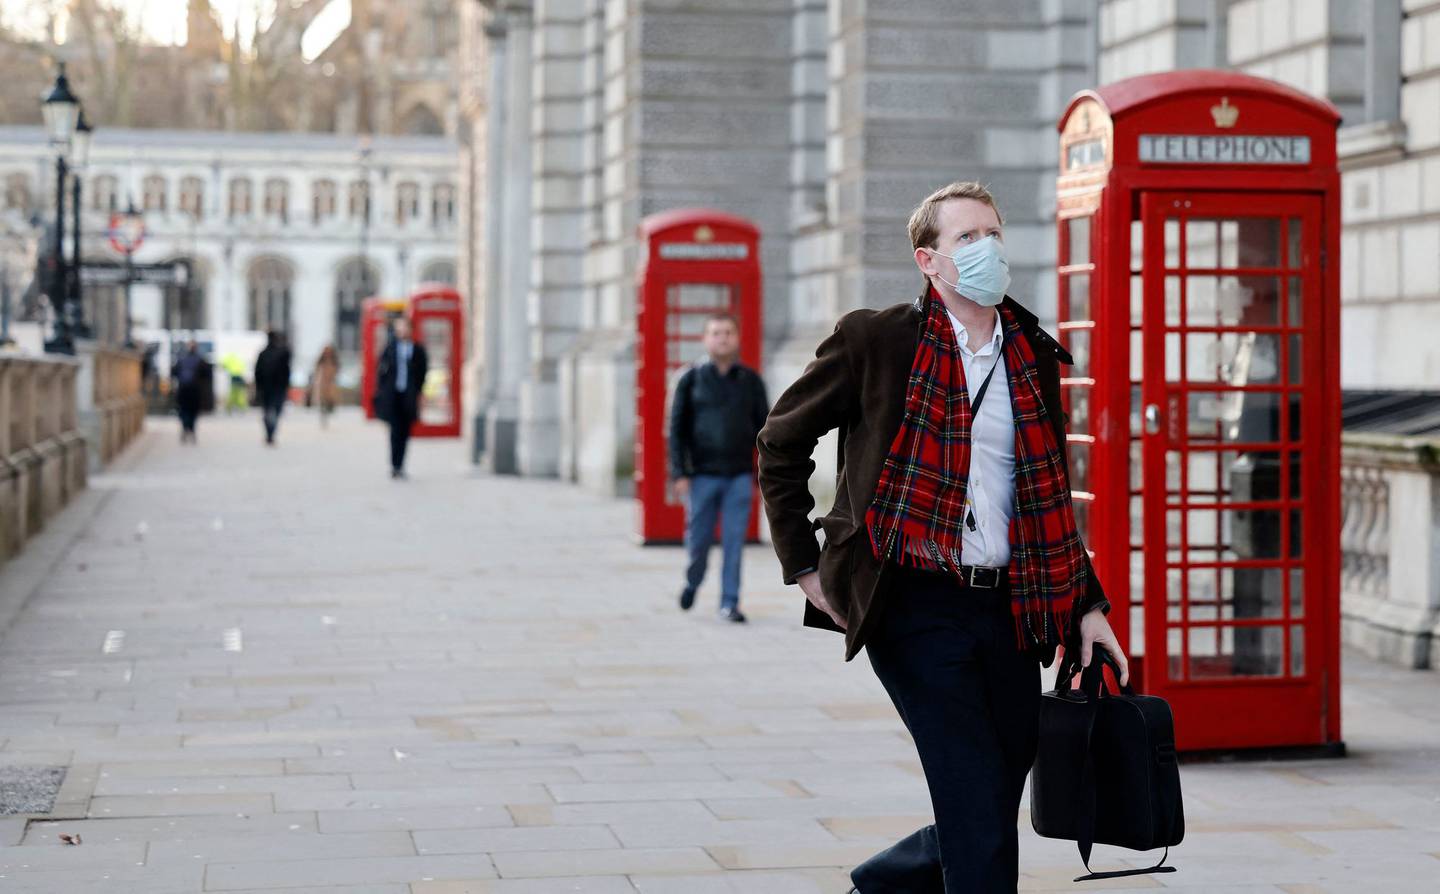 Først nådde smittebølgen toppen i London, og nå har også resten av Storbritannia passert smittetoppen, ifølge en oversikt.